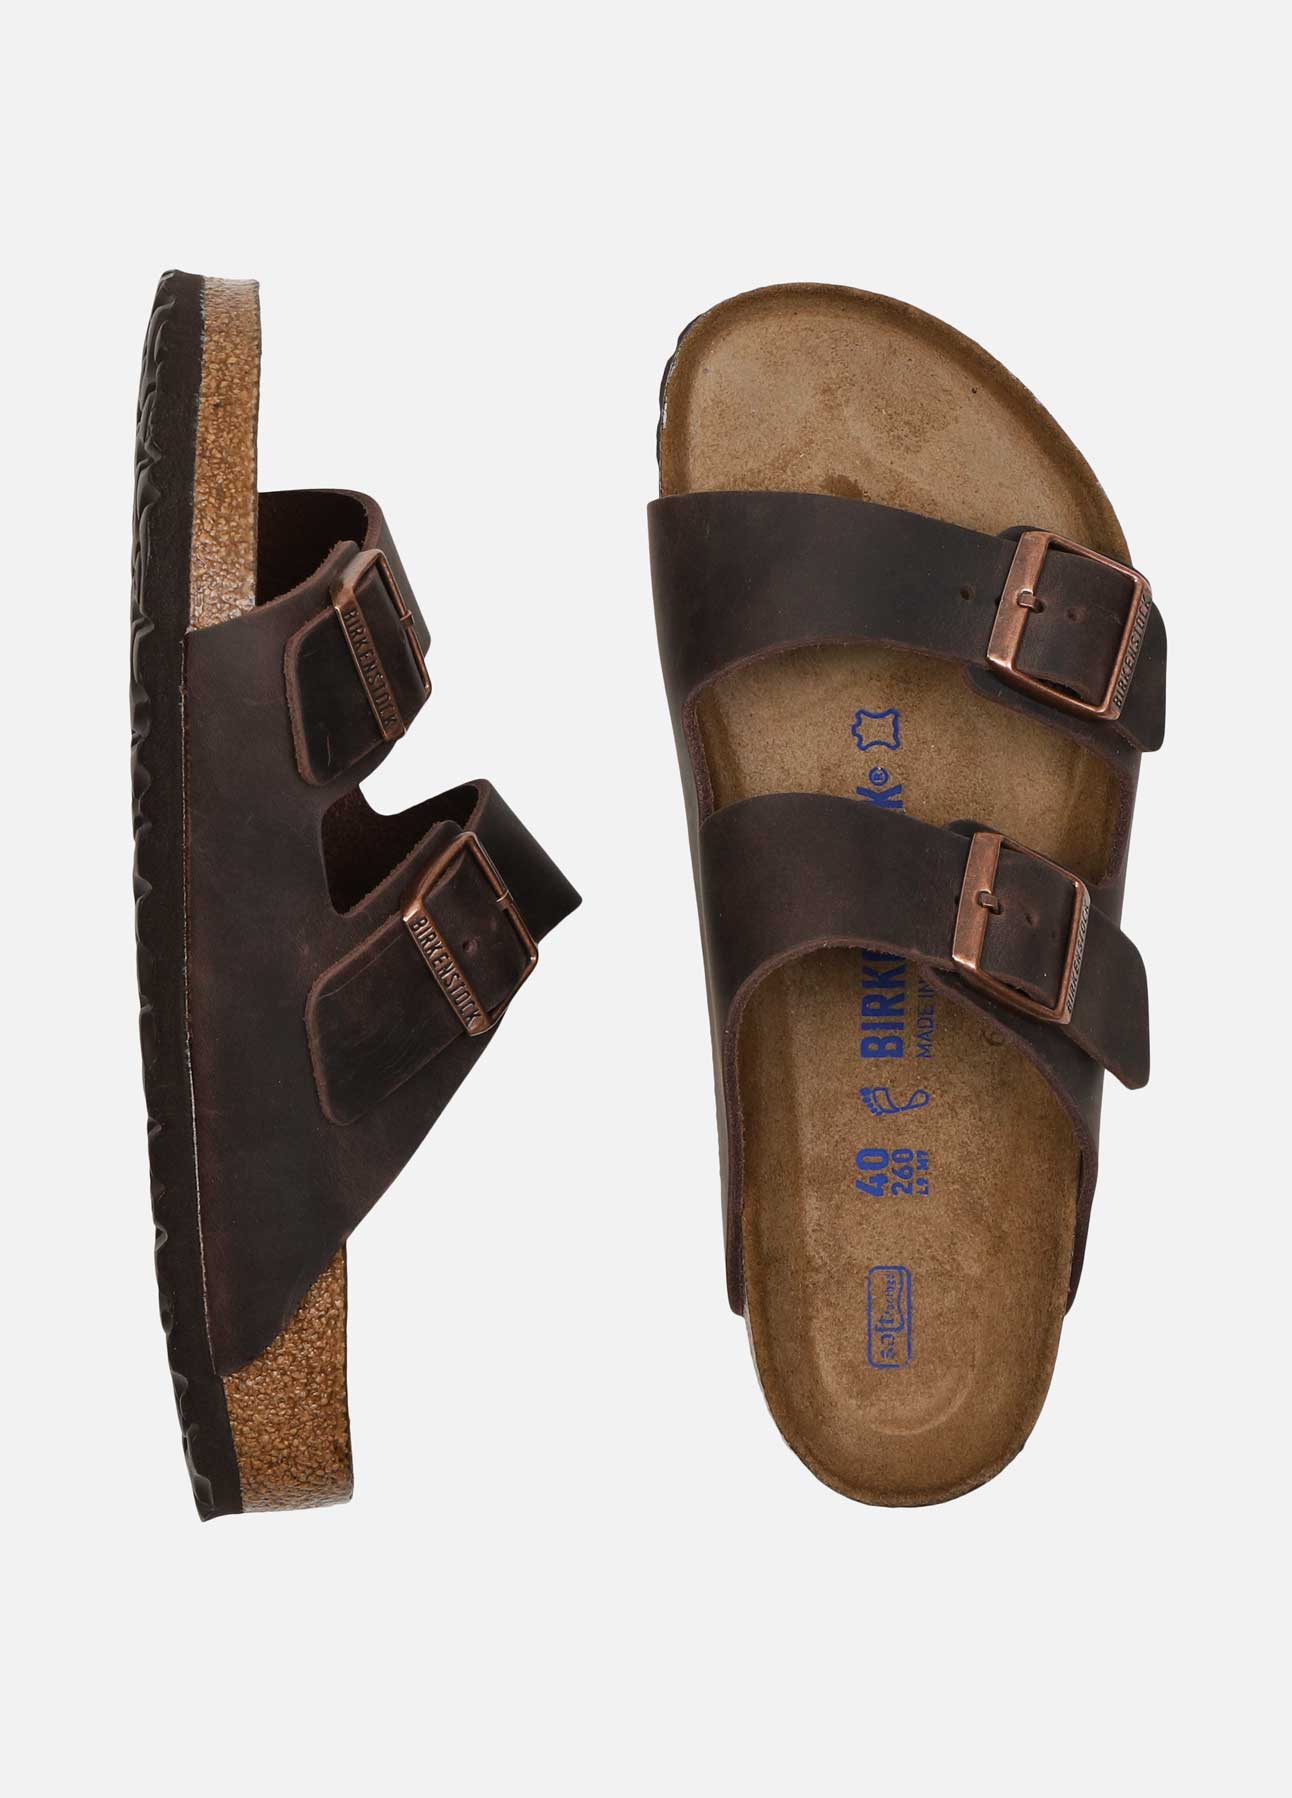 Procent Slutning liberal Arizona sandal fra Birkenstock | Shop online hos troelstrup.com